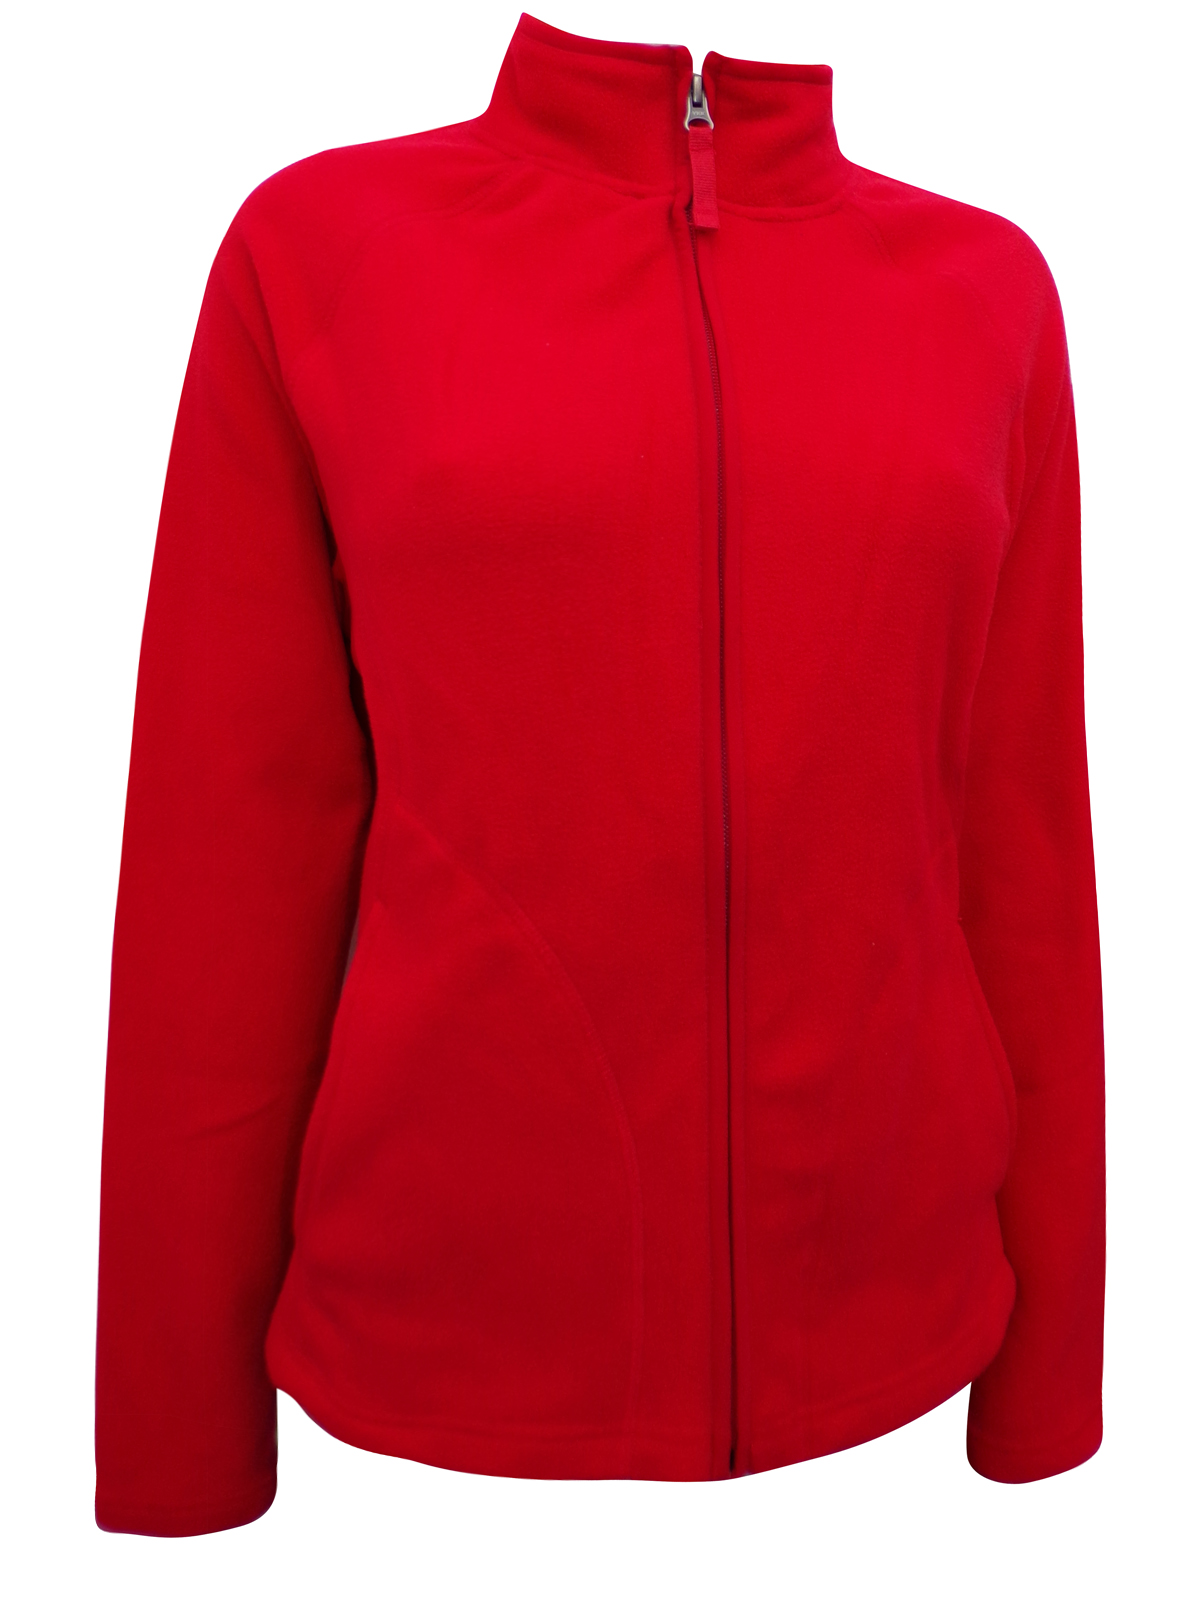 Merona - - Merona RED Zip Through Fleece Jacket - Size Small to XXLarge